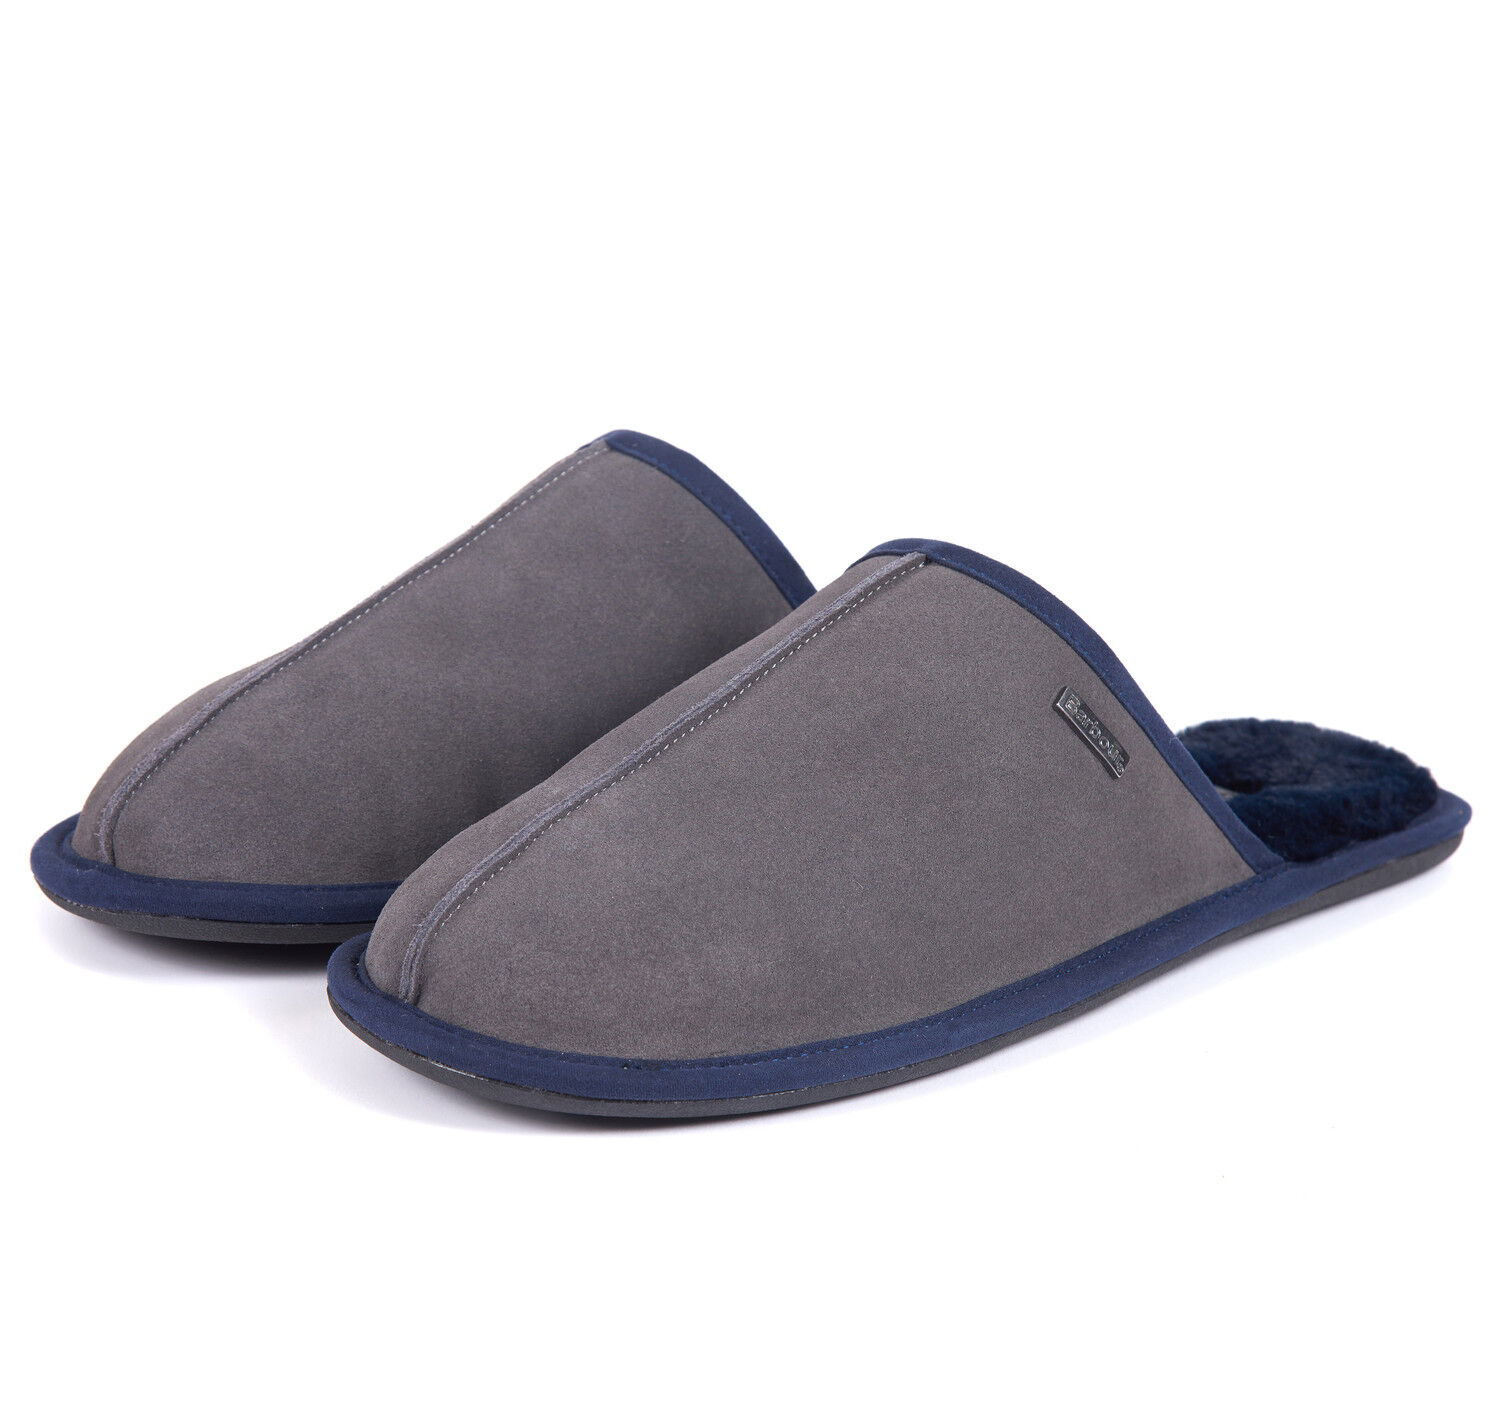 grey suede mule slippers